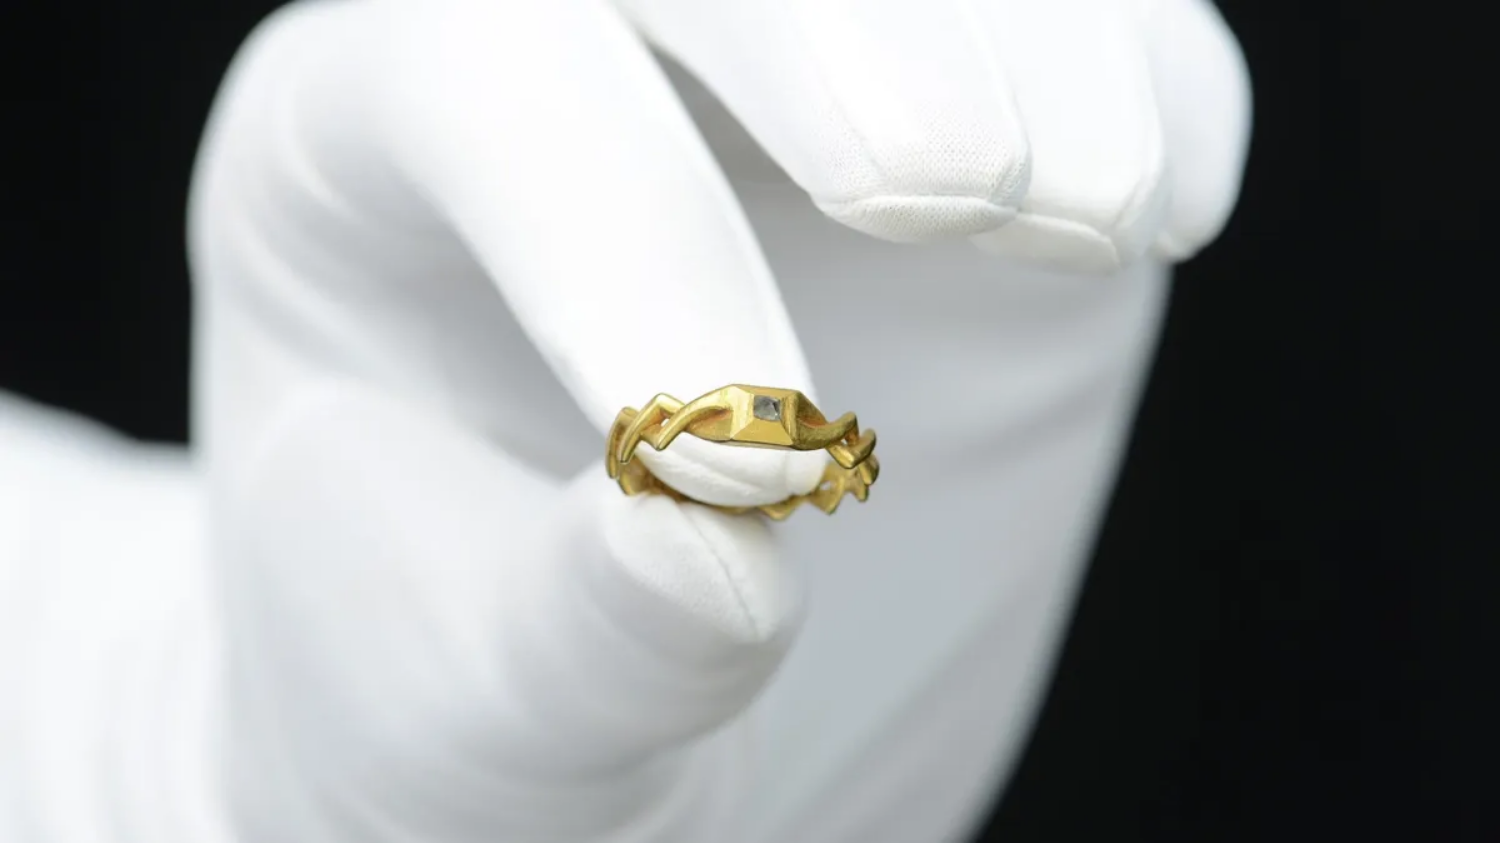 Detector de metais encontra anel de casamento medieval no valor estimado em R$ 252 mil